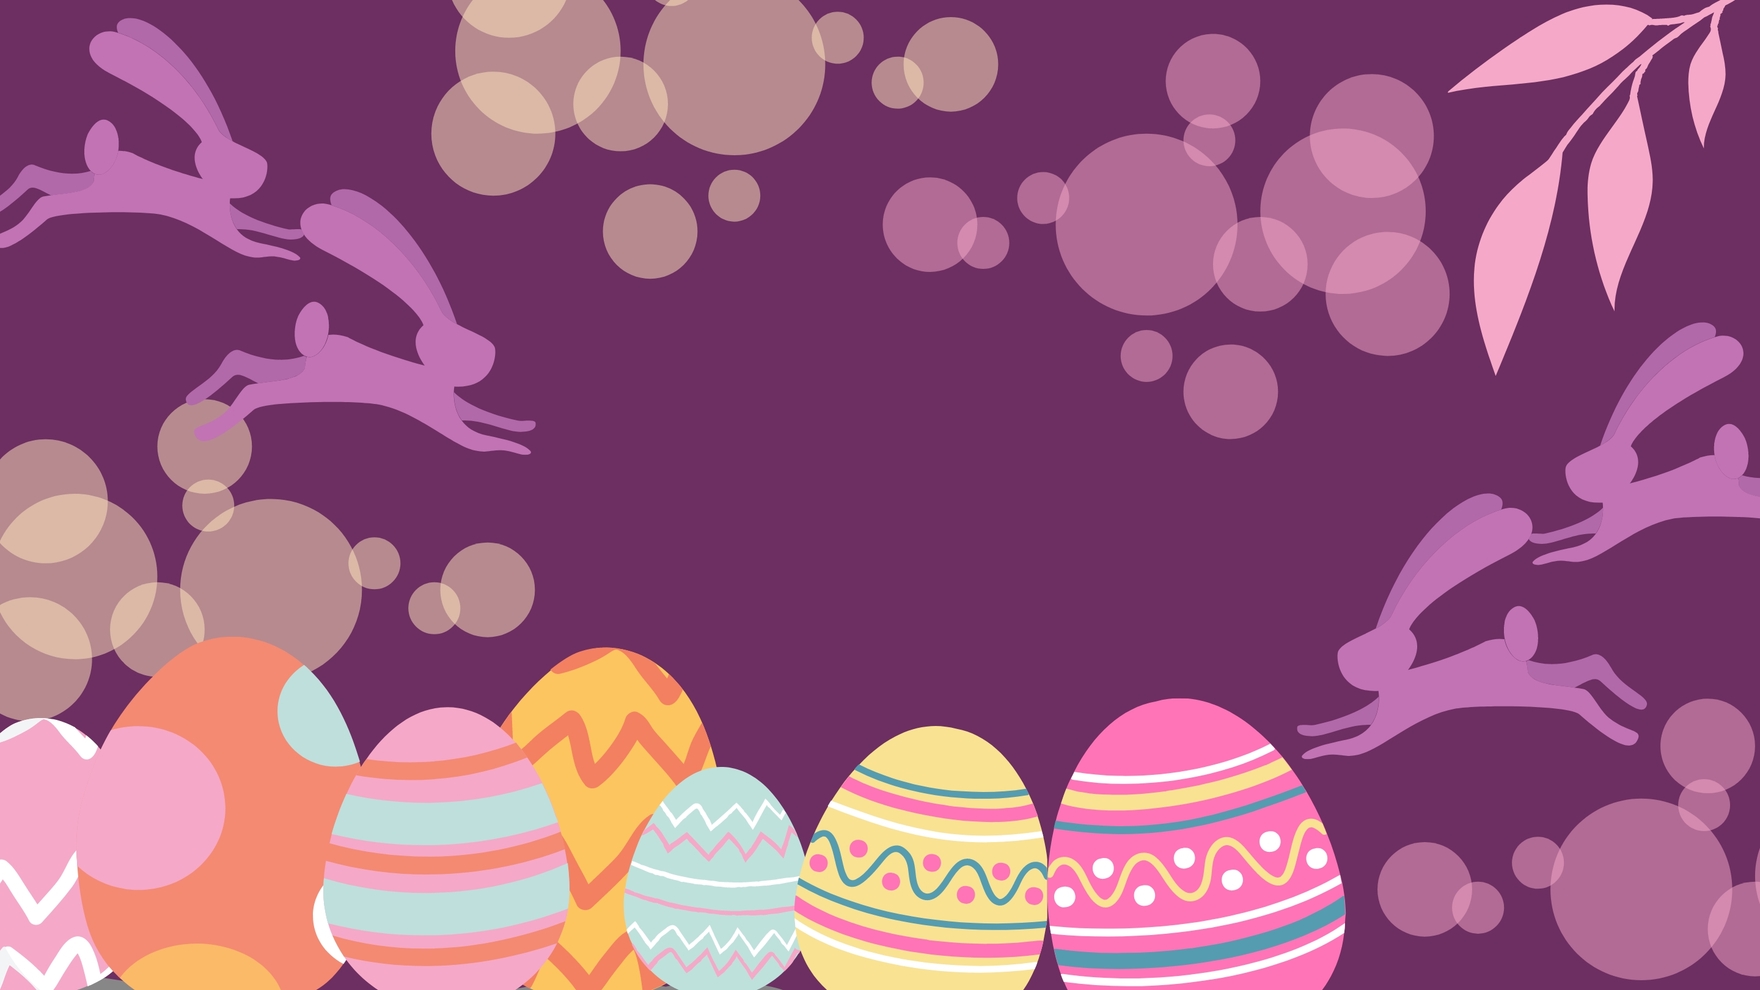 Free Easter Blur Background in PDF, Illustrator, PSD, EPS, SVG, JPG, PNG